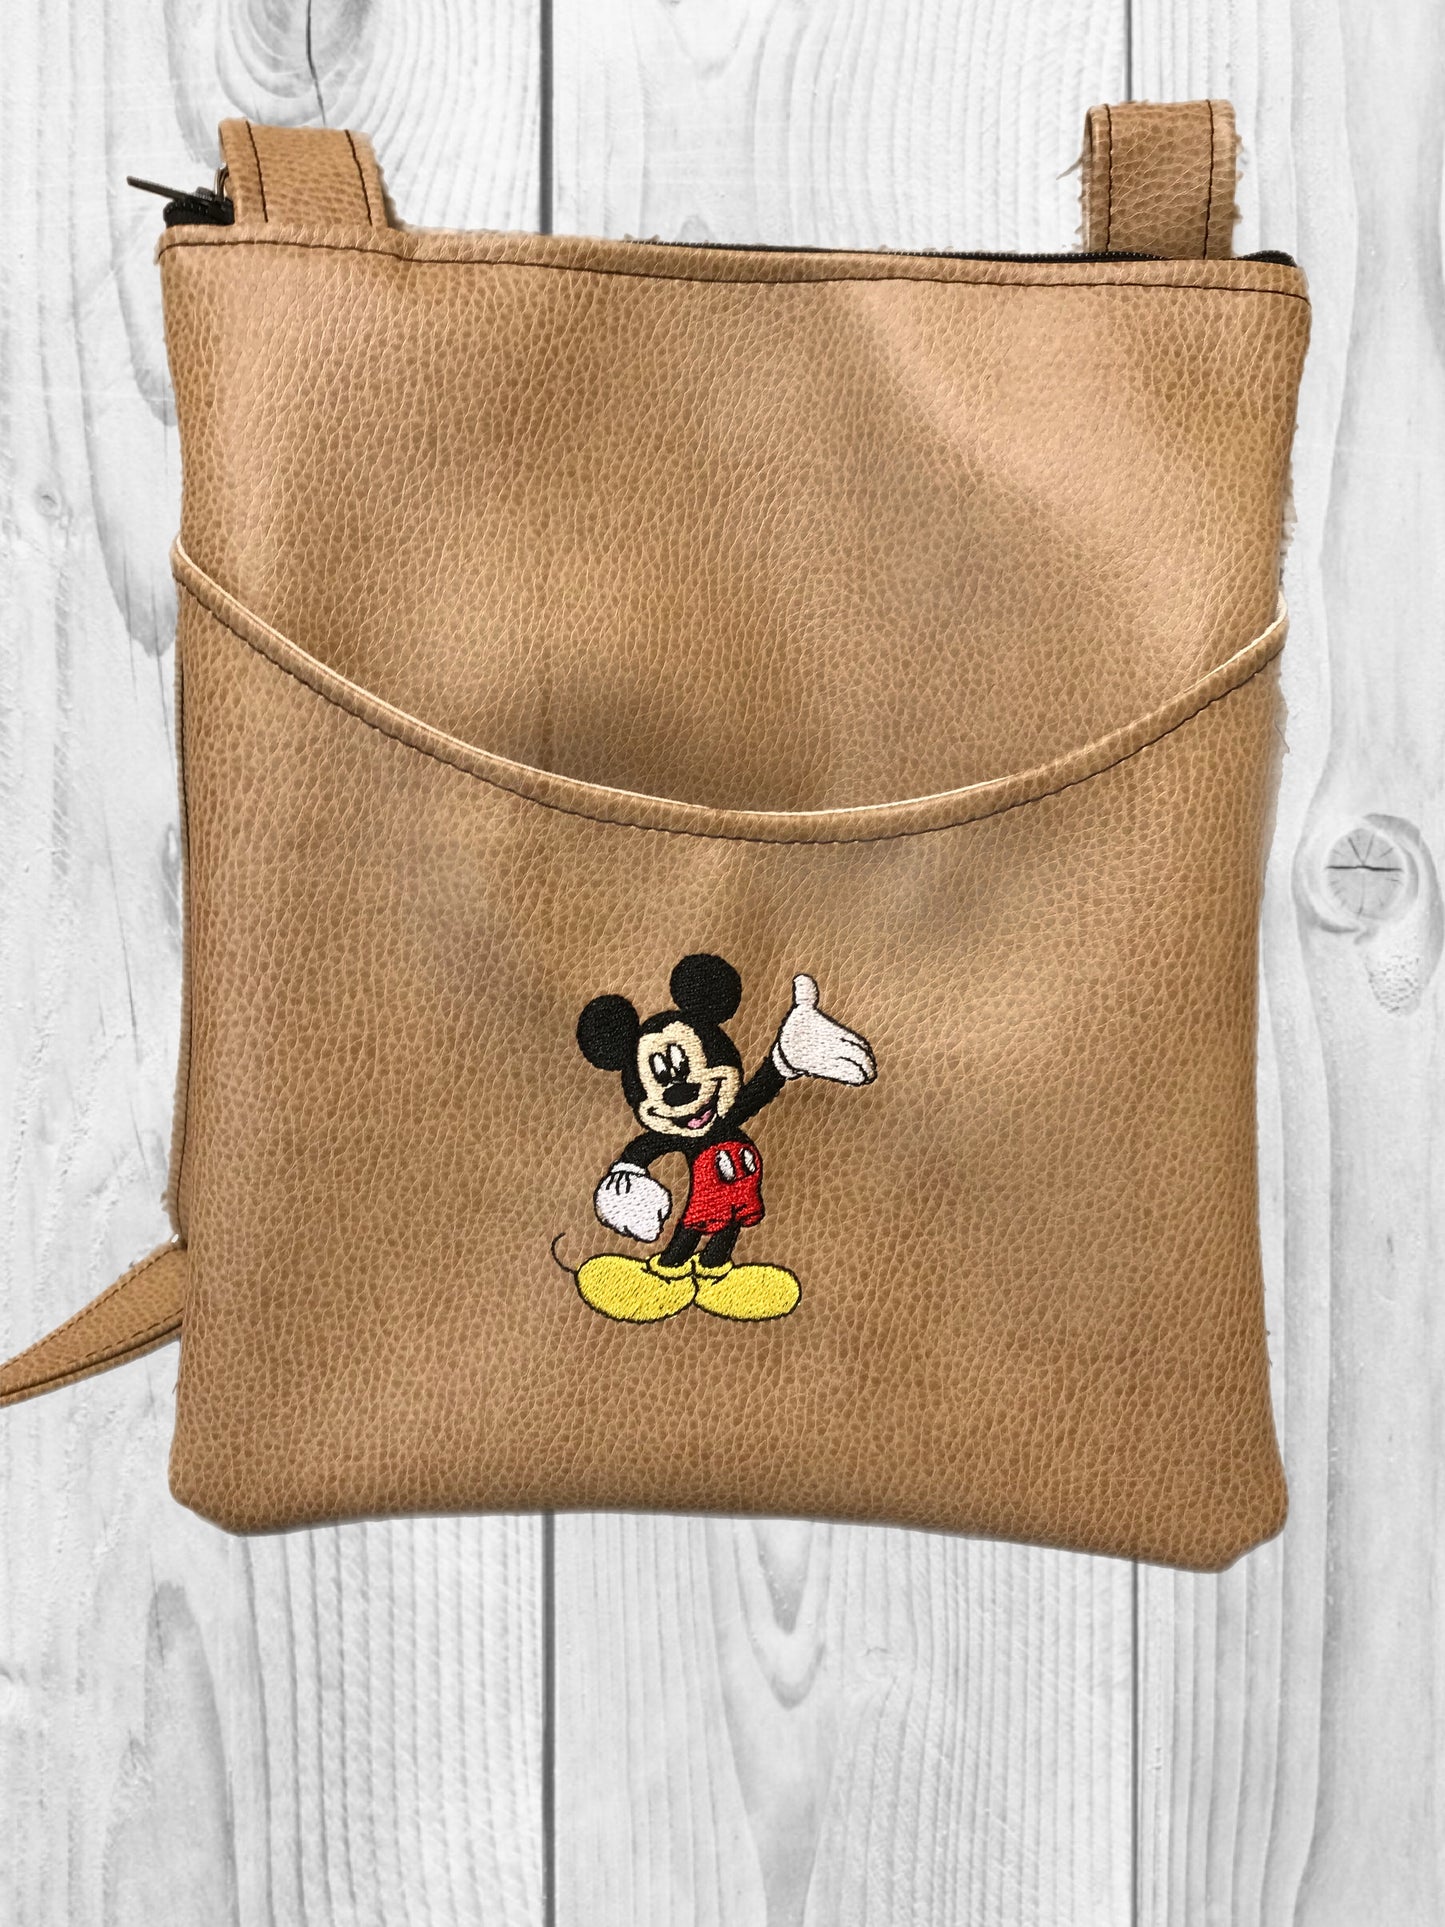 Mickey! Teeny Tiny Bag